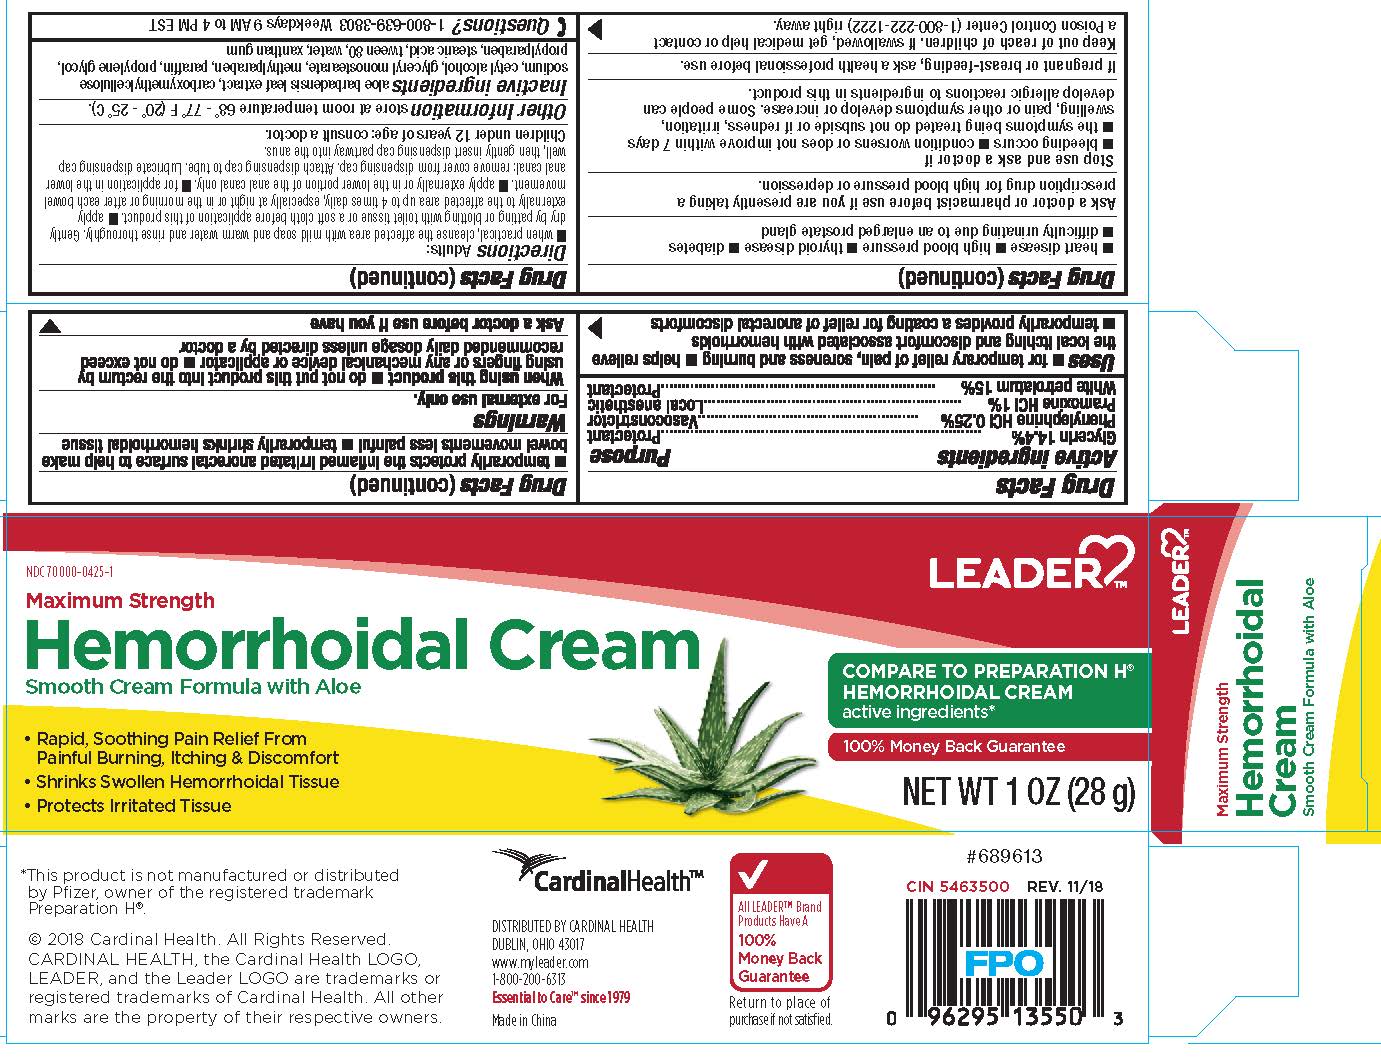 Hemorrhoidal Cream Glycerin Phenylephrine Hydrochloride Pramoxine Hydrochloride White